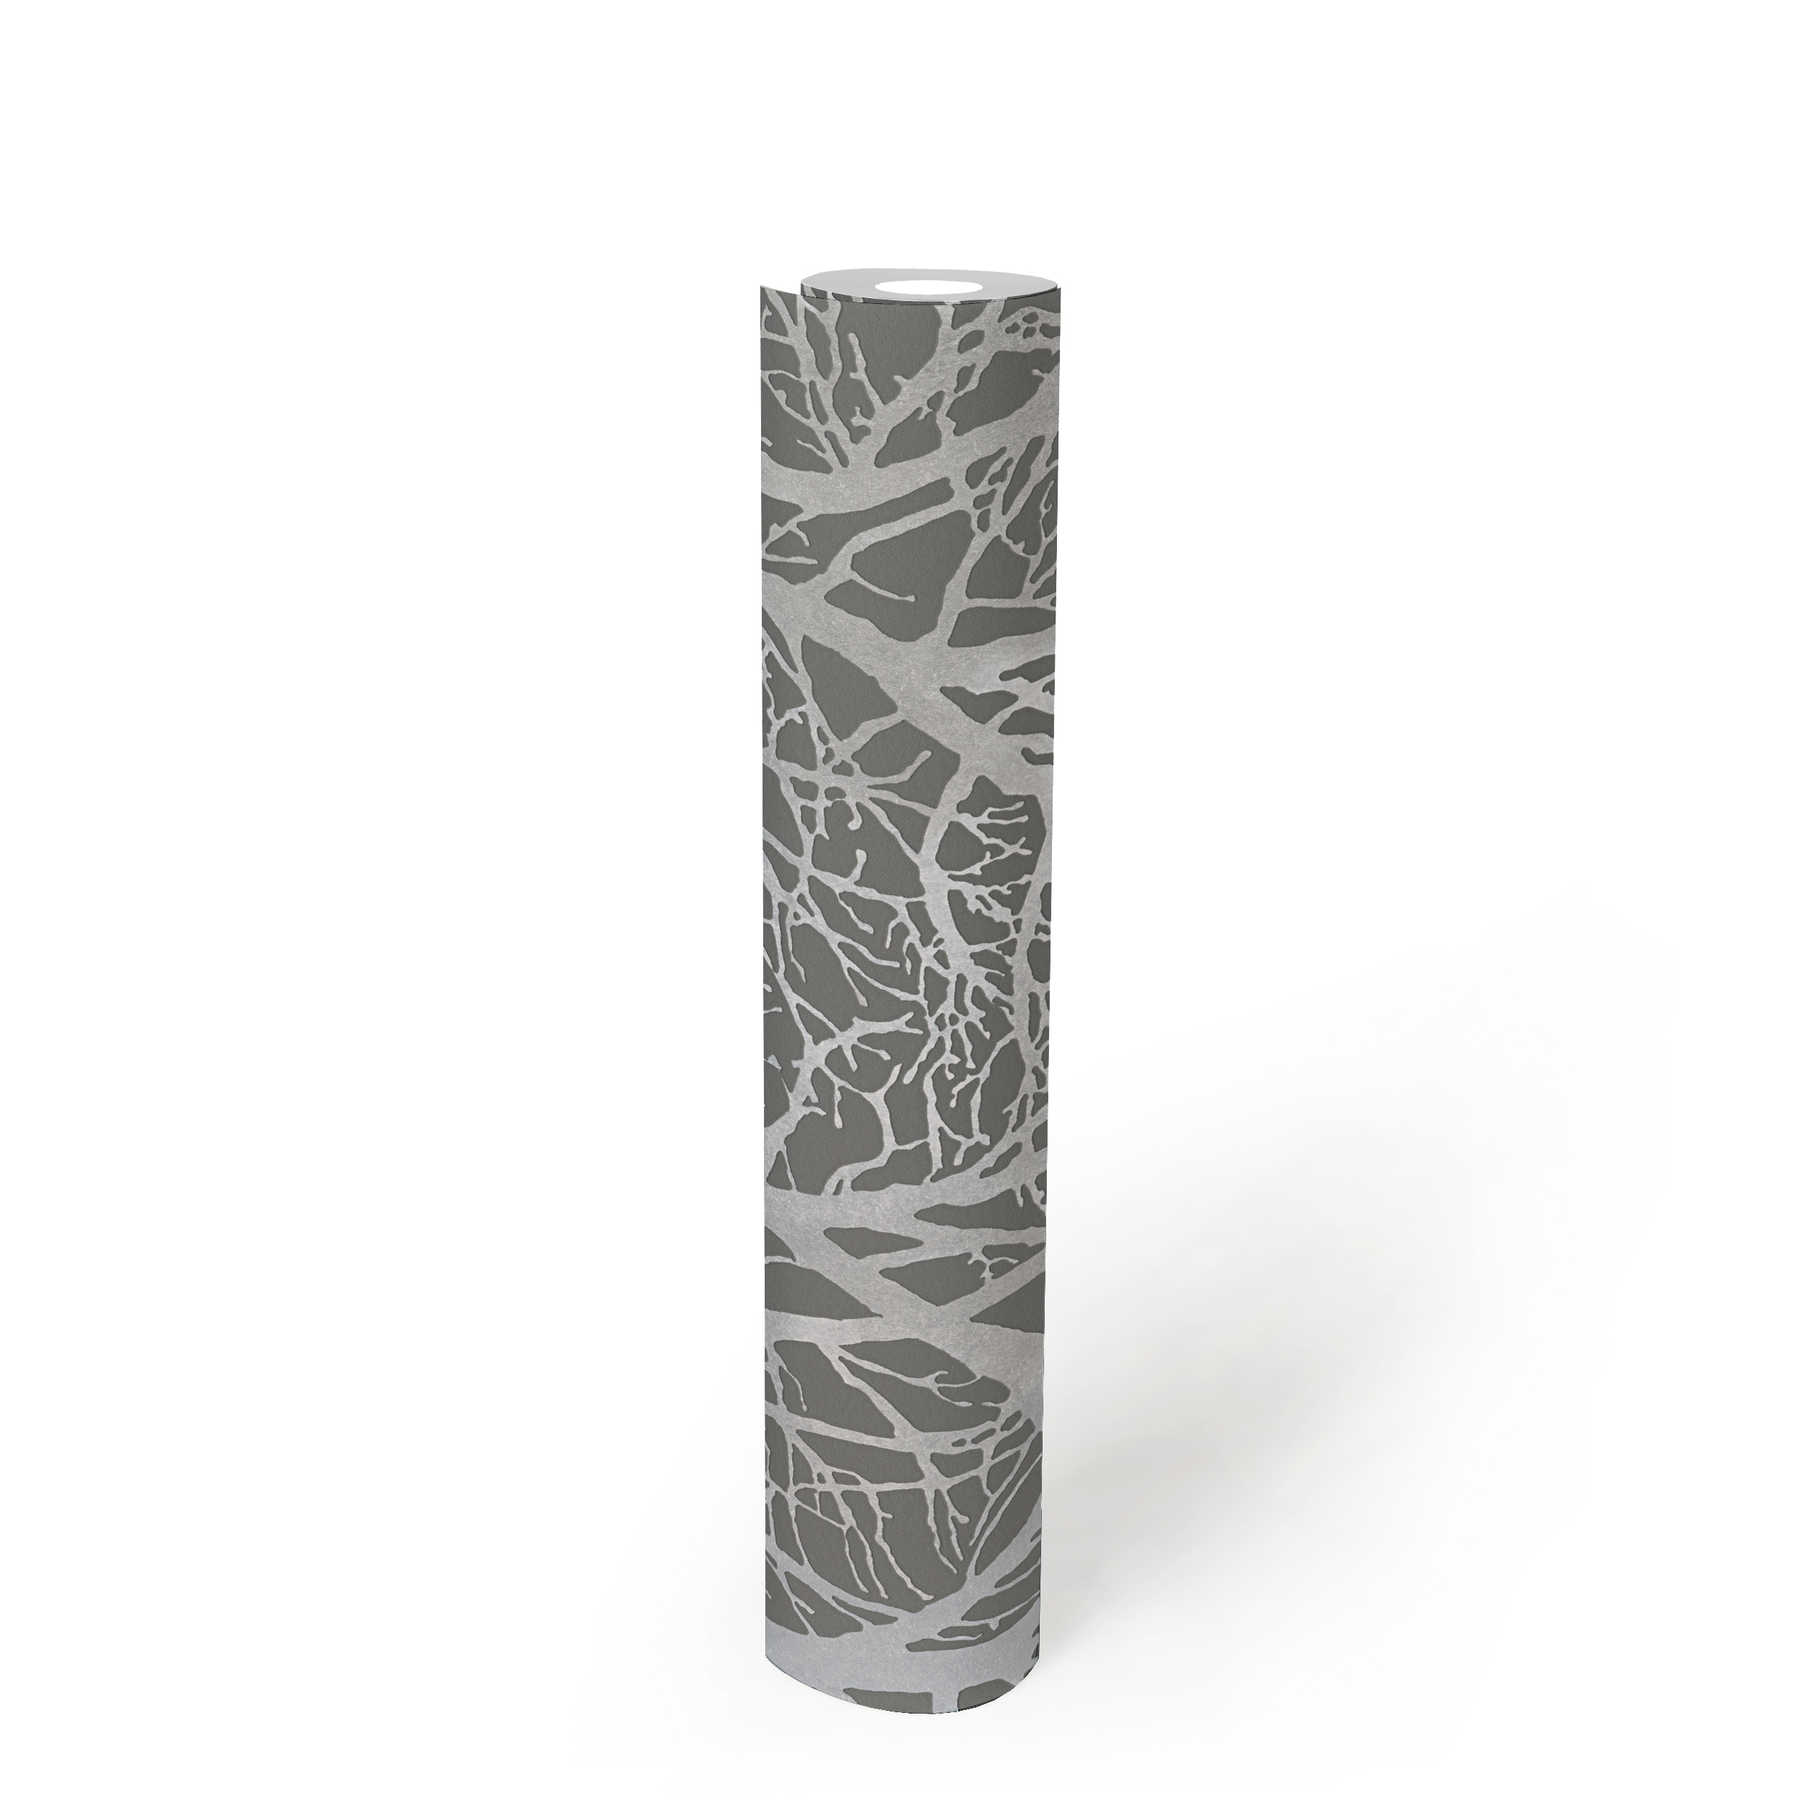             Antraciet behang met takmotief & metallic effect - zilver, grijs
        